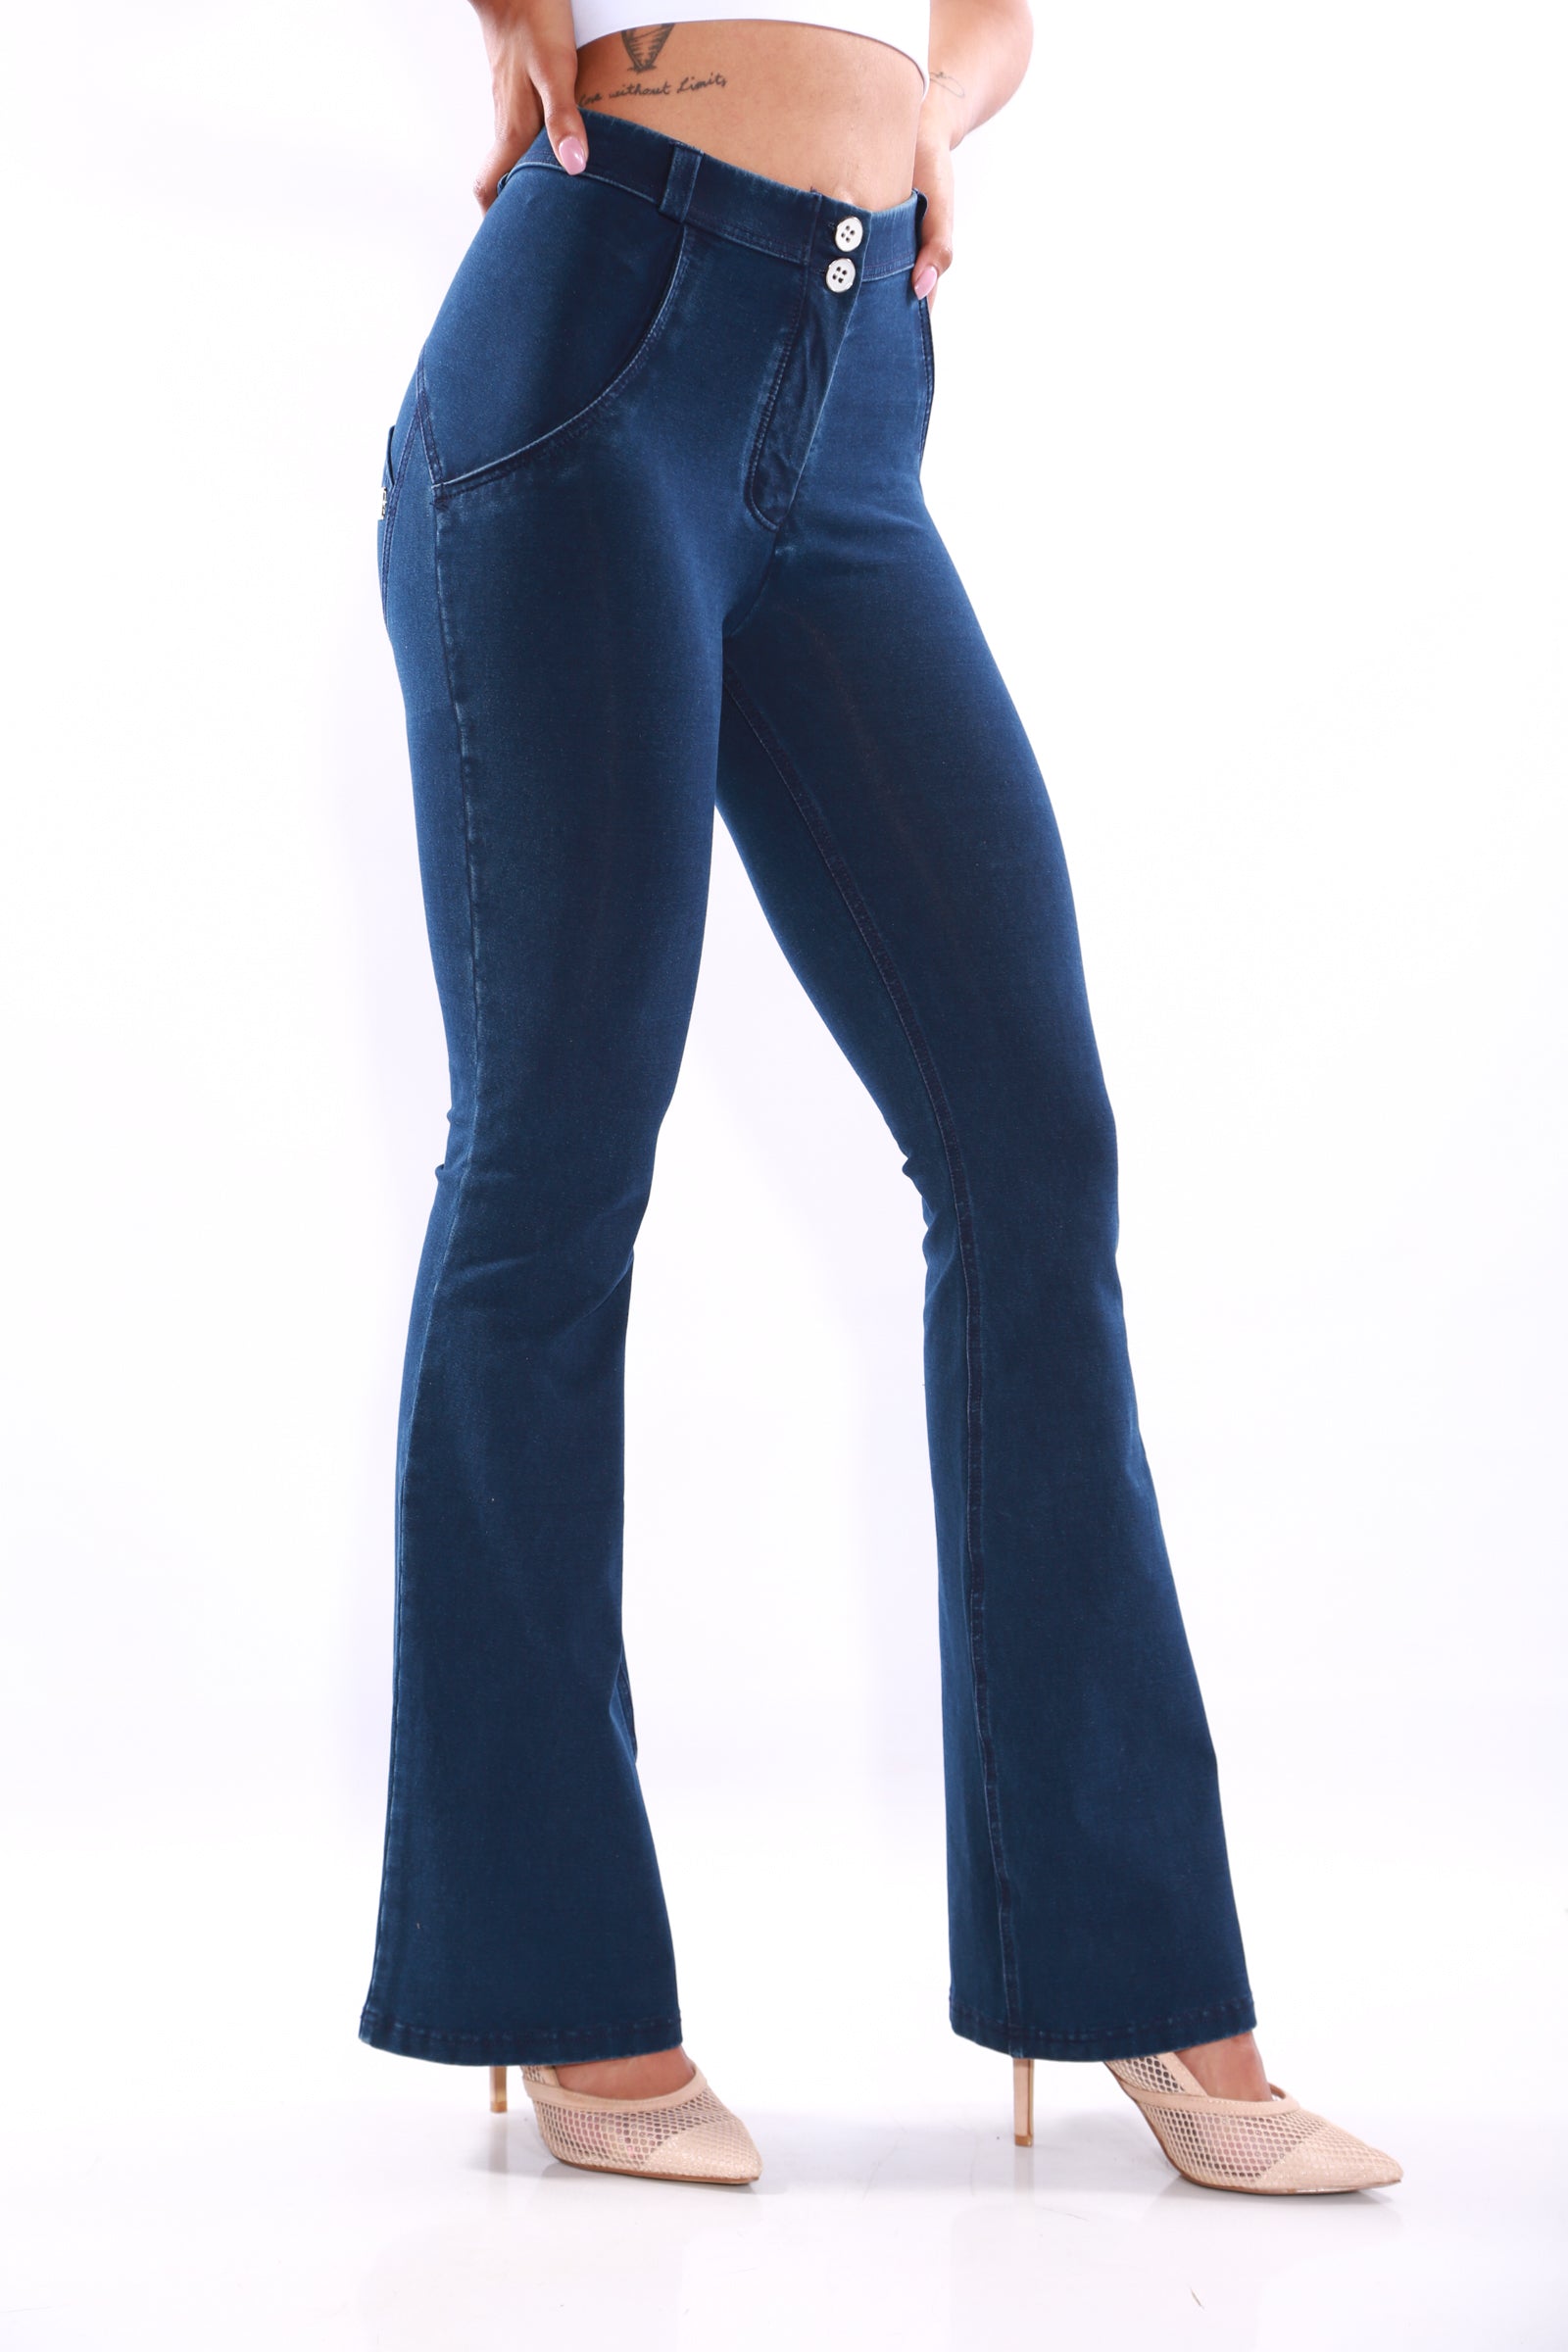 Blue Butt Lifter Jeans Wonderfit 2072 - Wonderfitshapers